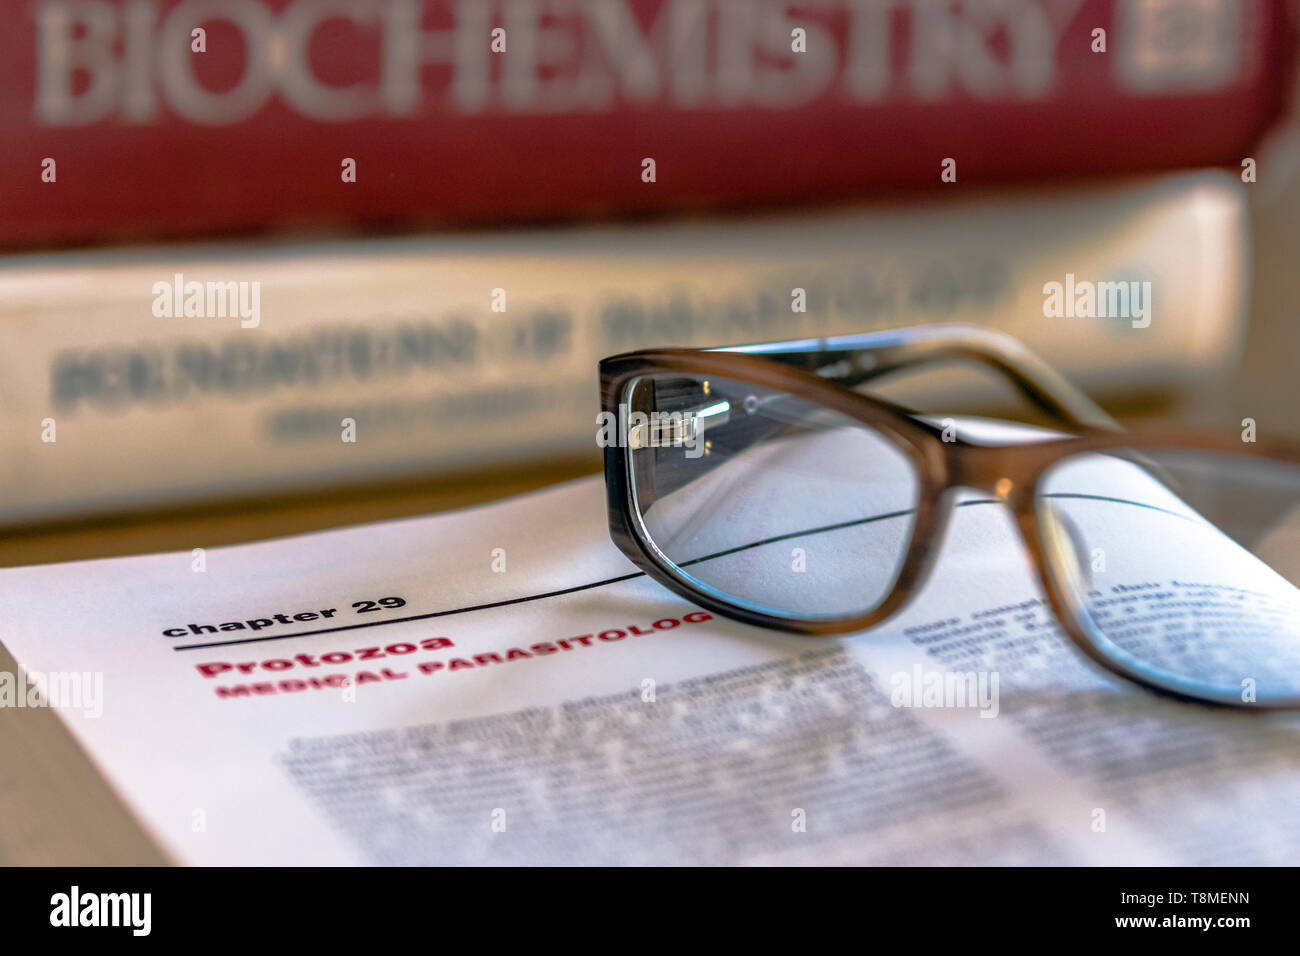 Brillen auf ein offenes Buch mit Protozoen Medizinische Parasitologie im Fokus mit anderen Life Science text Bücher im Hintergrund unscharf Stockfoto